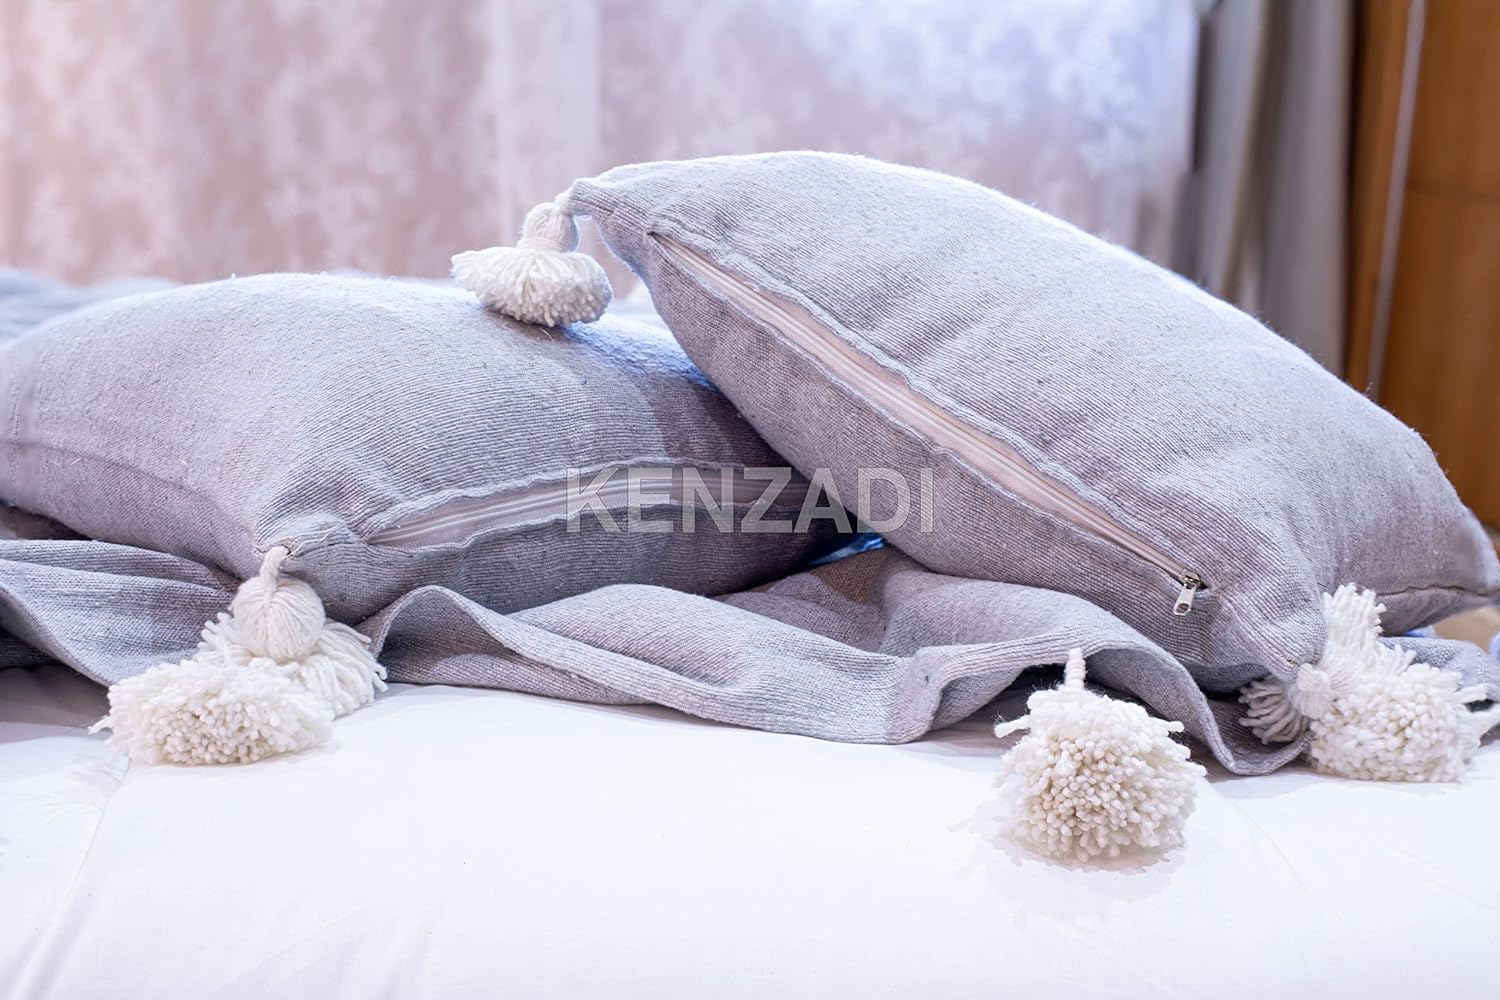 KENZADI Moroccan Handmade Pompom Blanket, Throw Blanket, Pom Pom Blanket, Boho Blanket, Bed Cover, Warm Blanket, Cozy Blanket (Striped Brown with pom White, King (U.S. Standard)) - Handmade by My Poufs